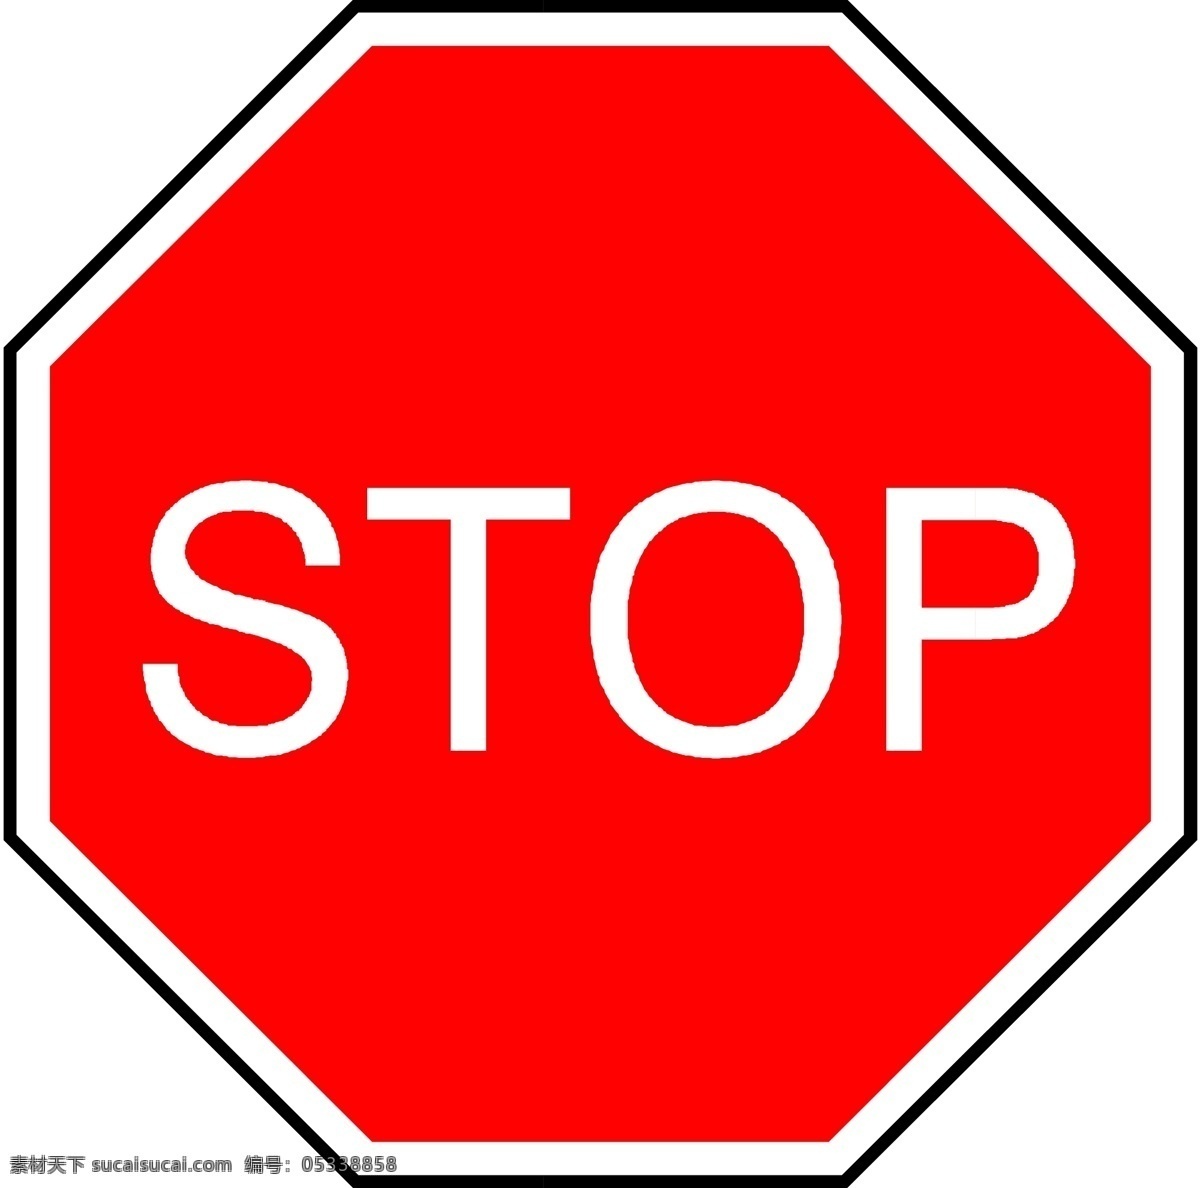 停车检查 停车让行 stop 停止 交通规则 交通符号 交通标志 交通标识 标志图标 公共标识标志